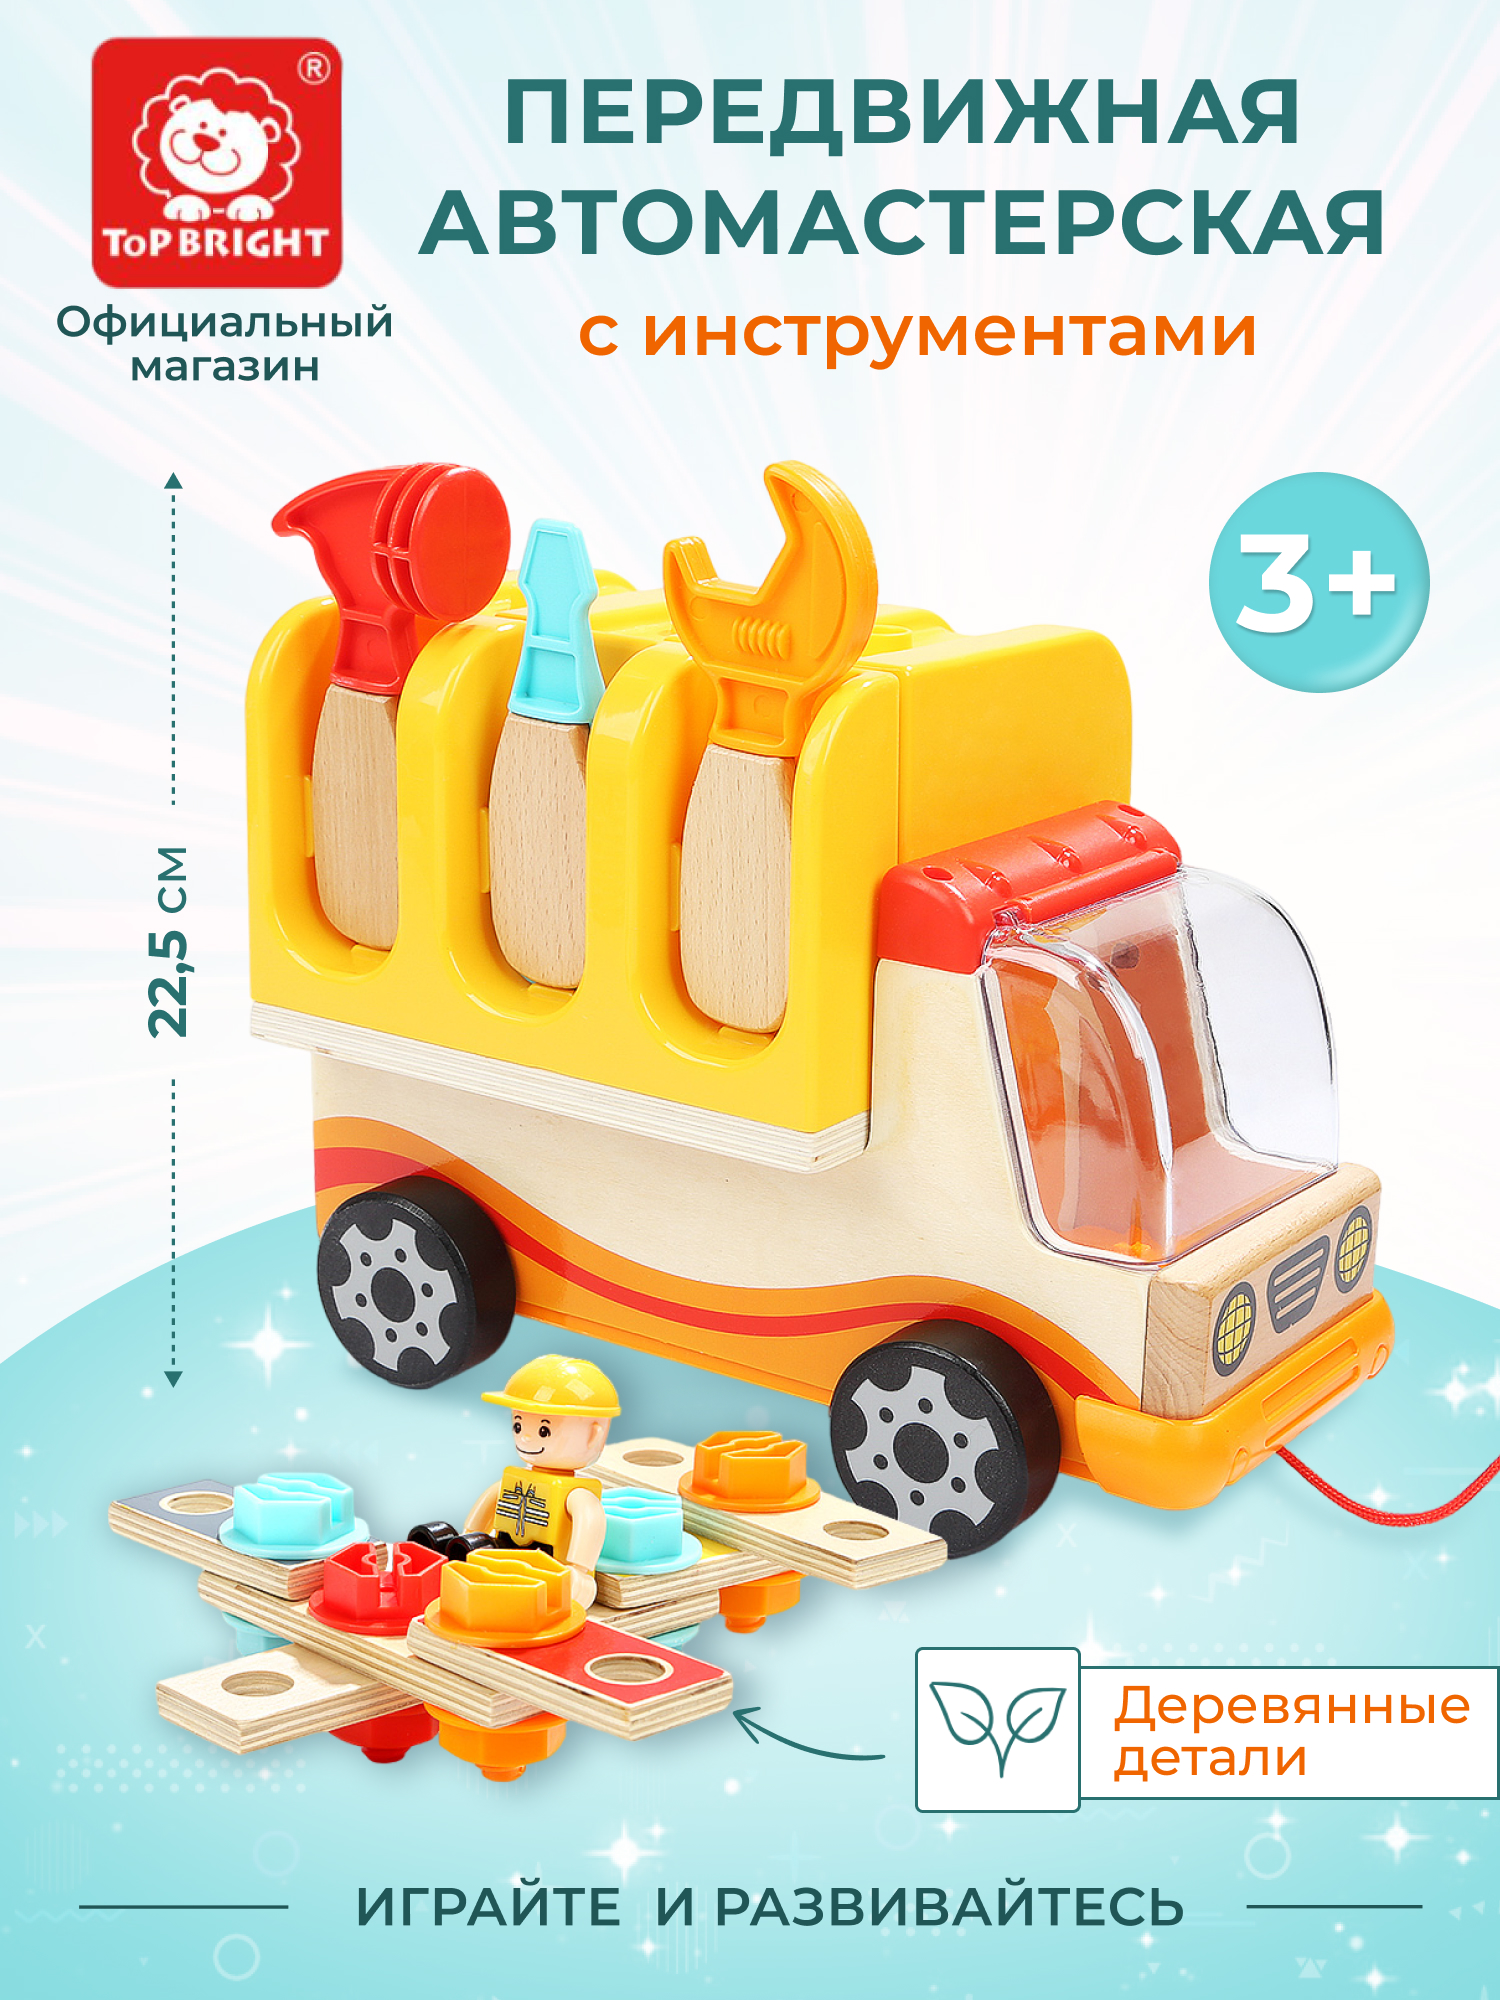 Набор инструментов детский TOPBRIGHT Машинка каталка, бизиборд, 120312 машинка каталка 661 lamborghini orange оранжевый